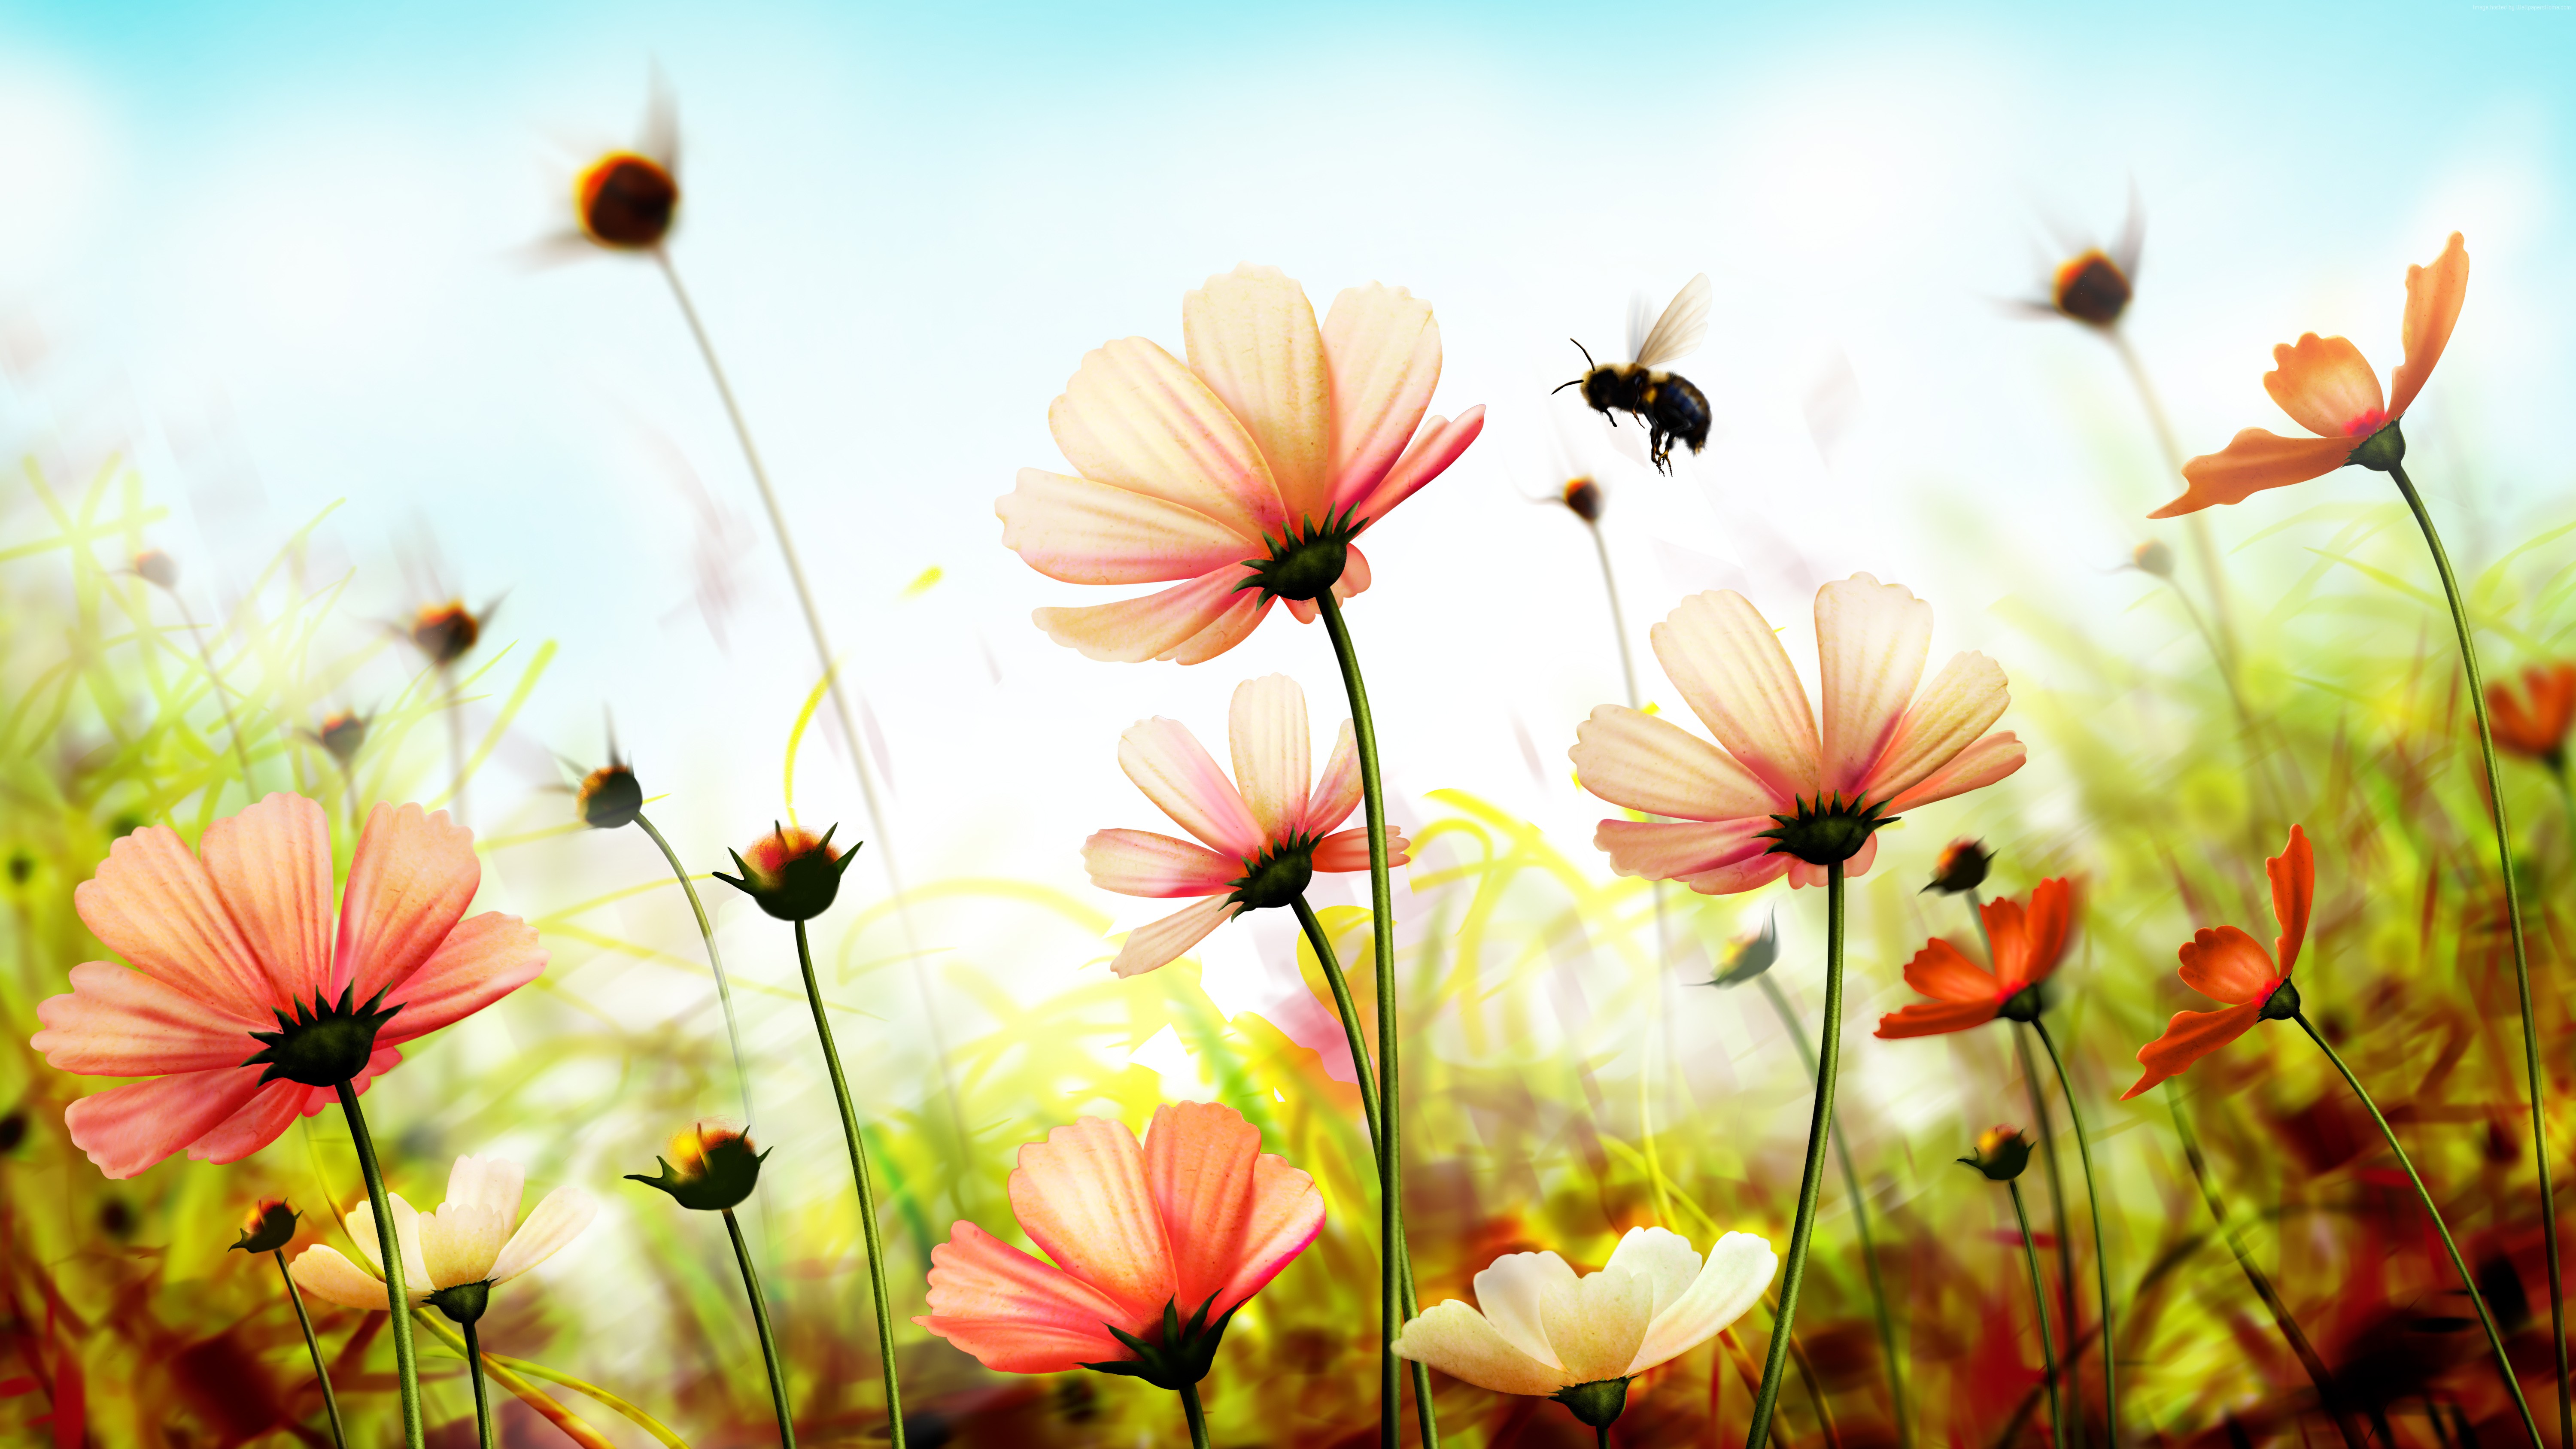 Скачать обои бесплатно Природа, Космос, Цветок, Пчела, Солнечно, Земля/природа, Розовый Цветок, Флауэрсы картинка на рабочий стол ПК